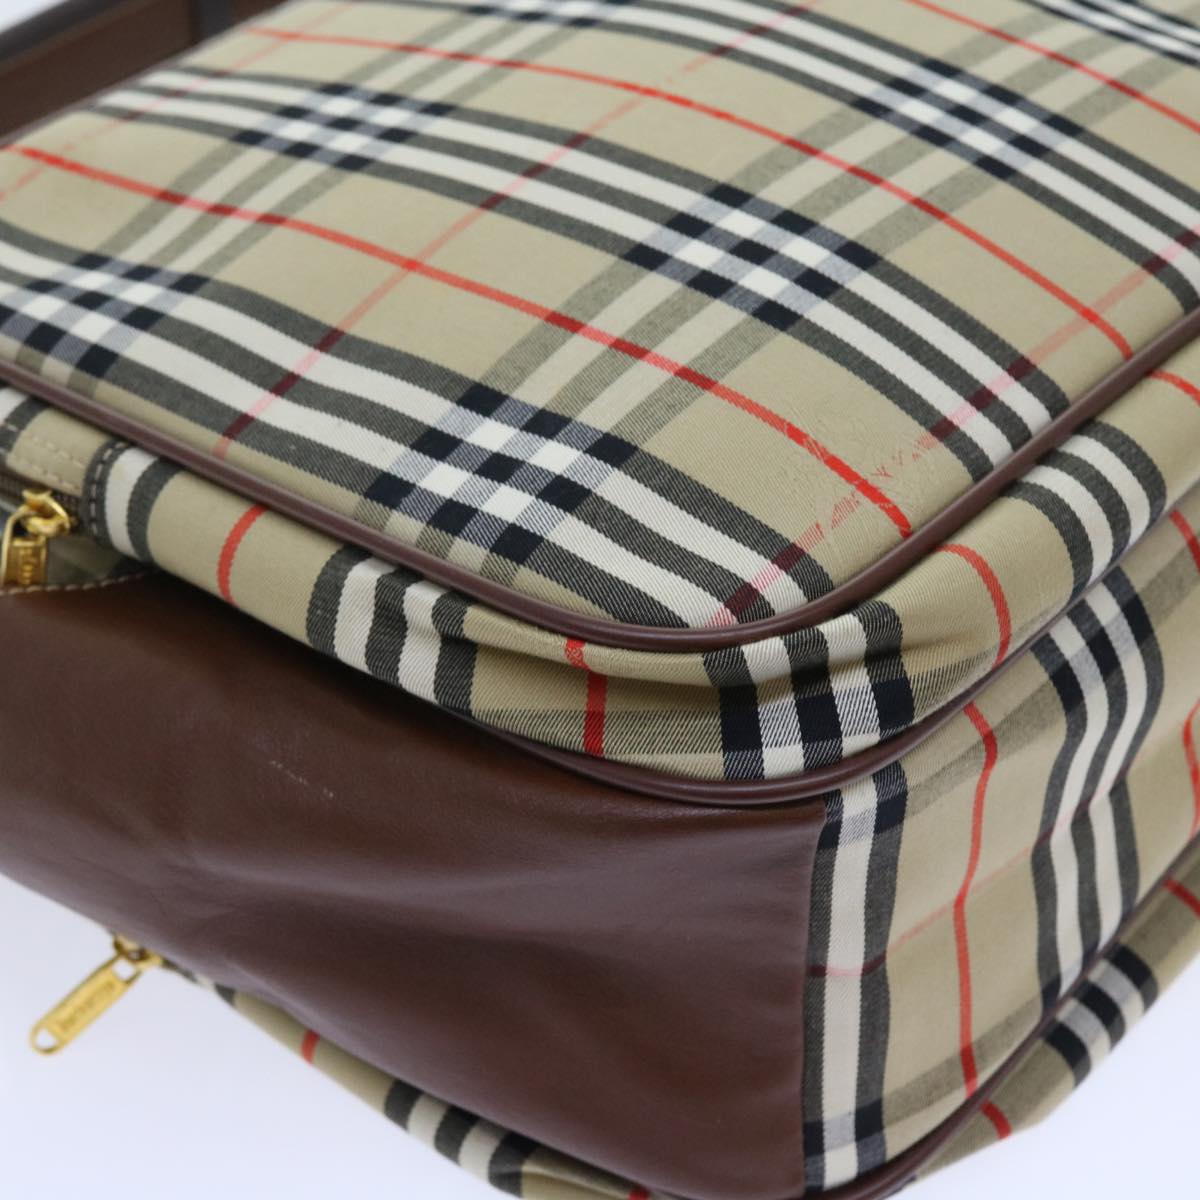 Burberrys Nova Check Shoulder Bag Canvas Leather 2way Beige Brown Auth fm2829